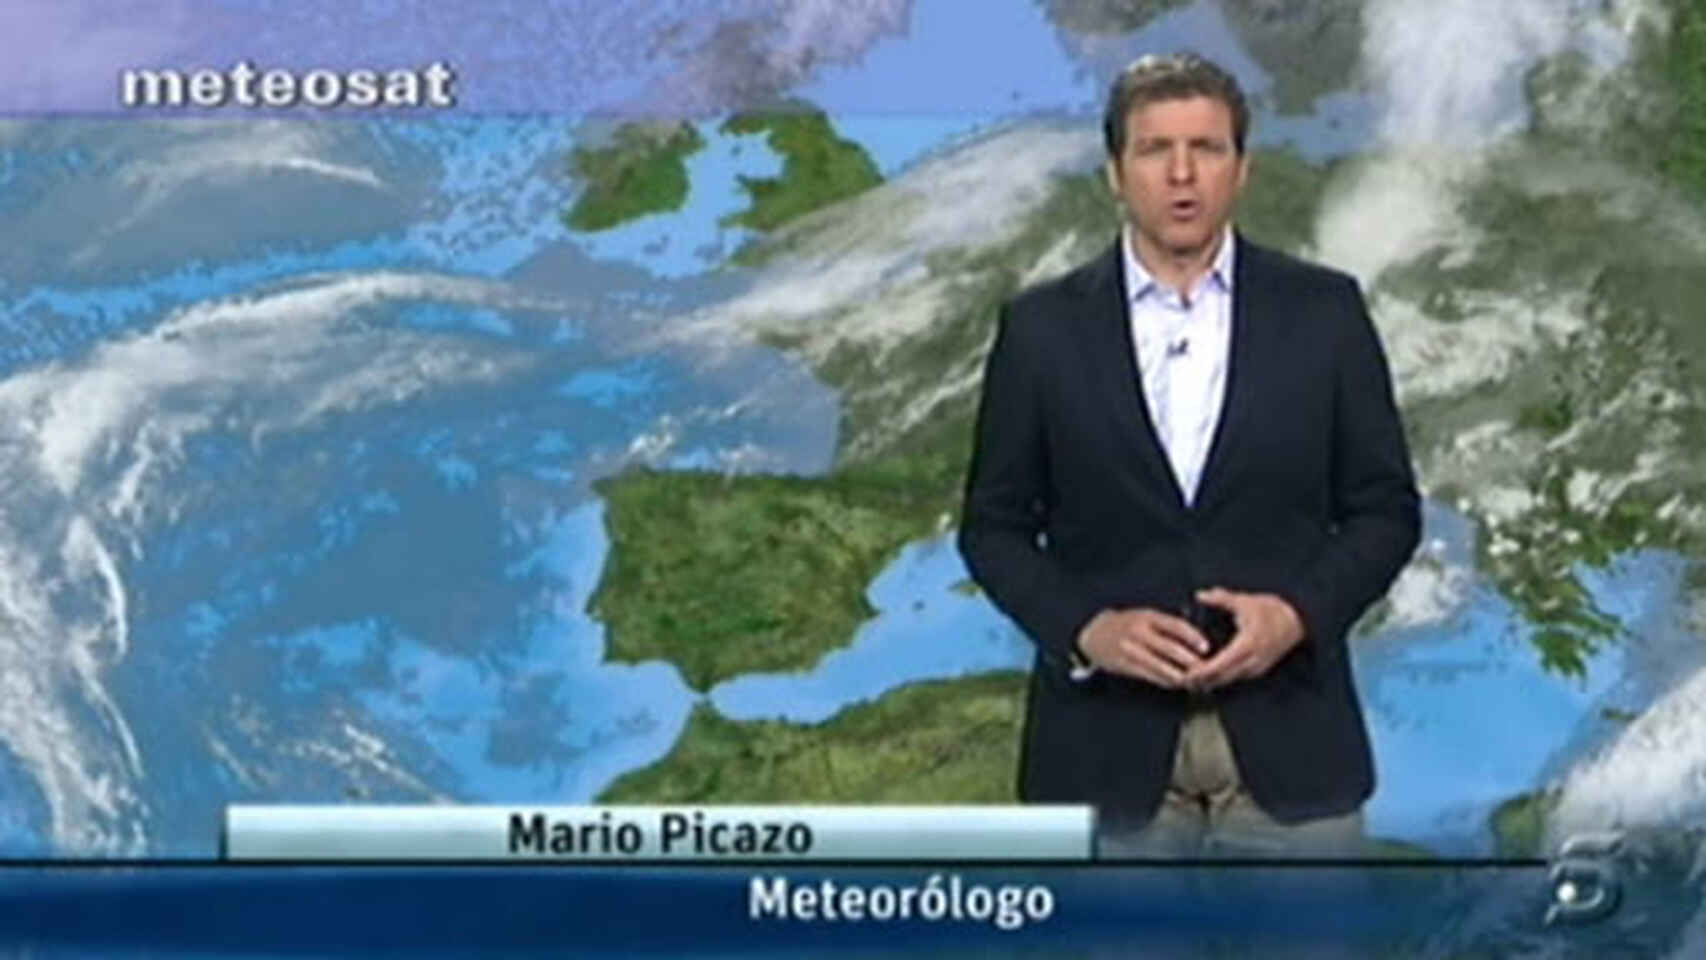 El meteorólogo Mario Picazo avisa sobre lo que sucederá al fina del verano con las altas temperaturas